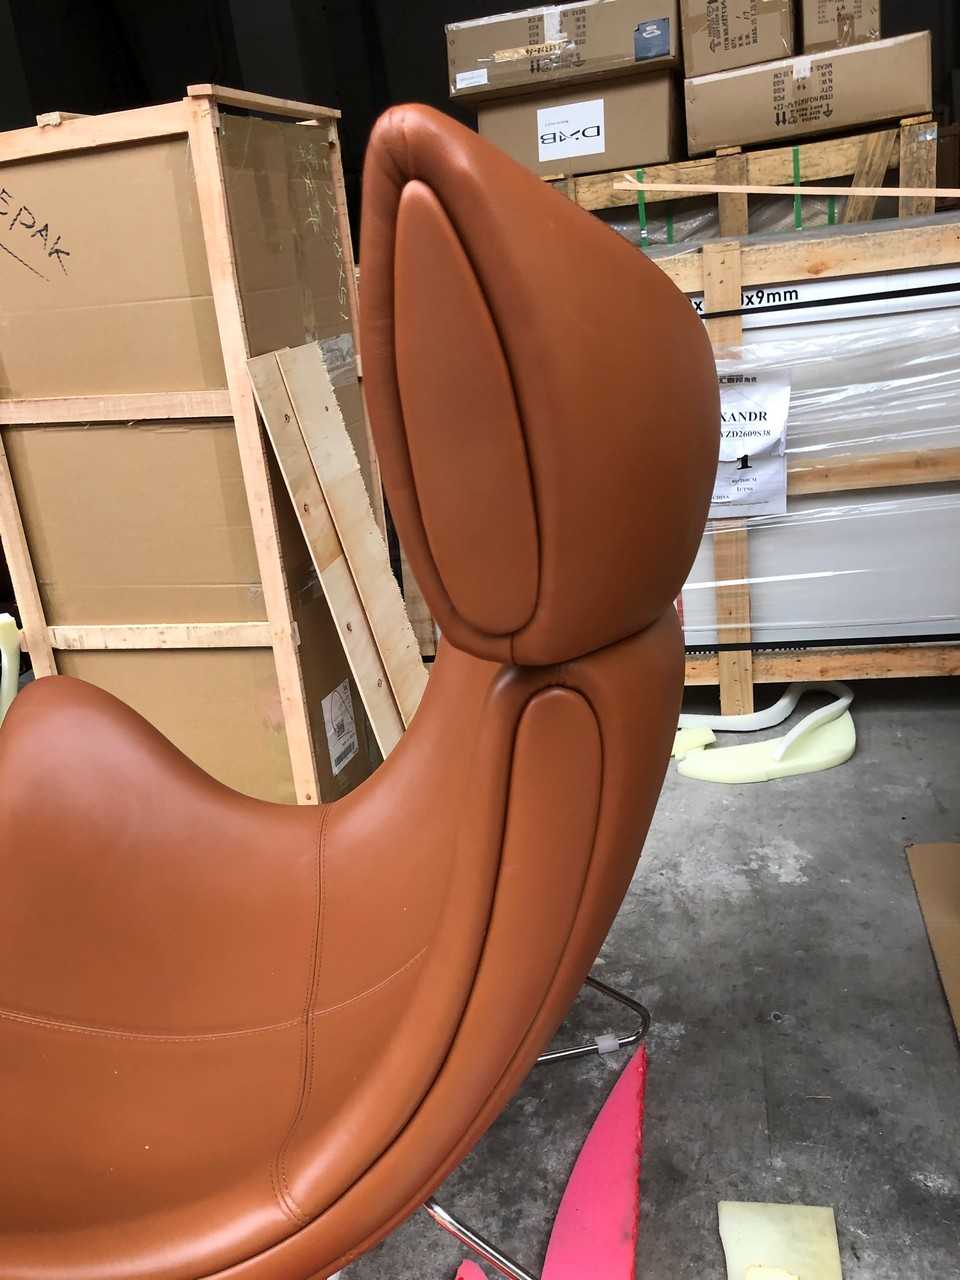 Дизайнерские кресла в стиле IMOLA BoConcept